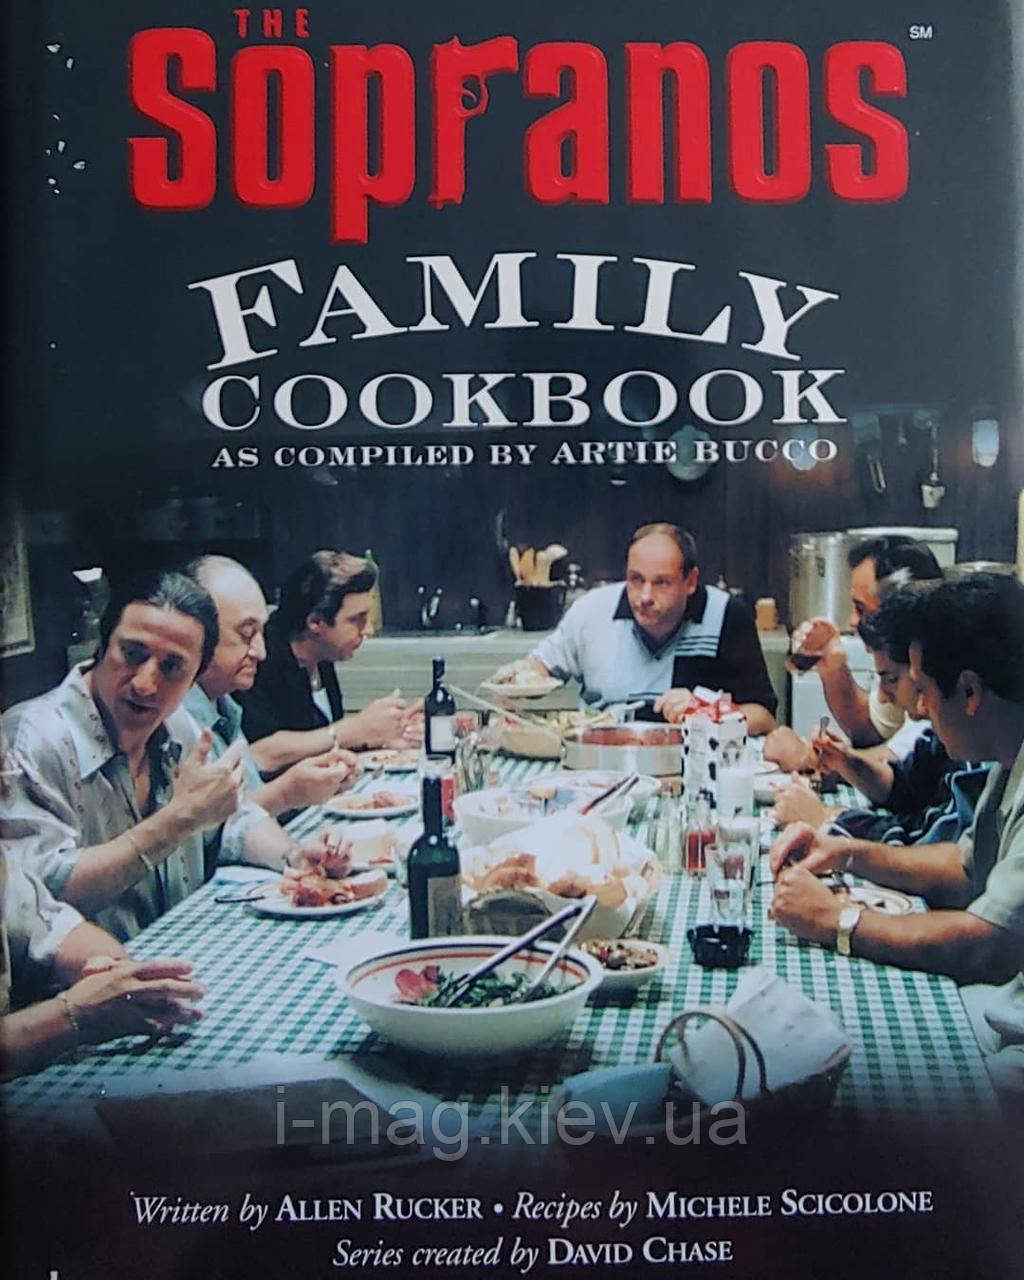 Кулінарна книга Спорано подарункове видання